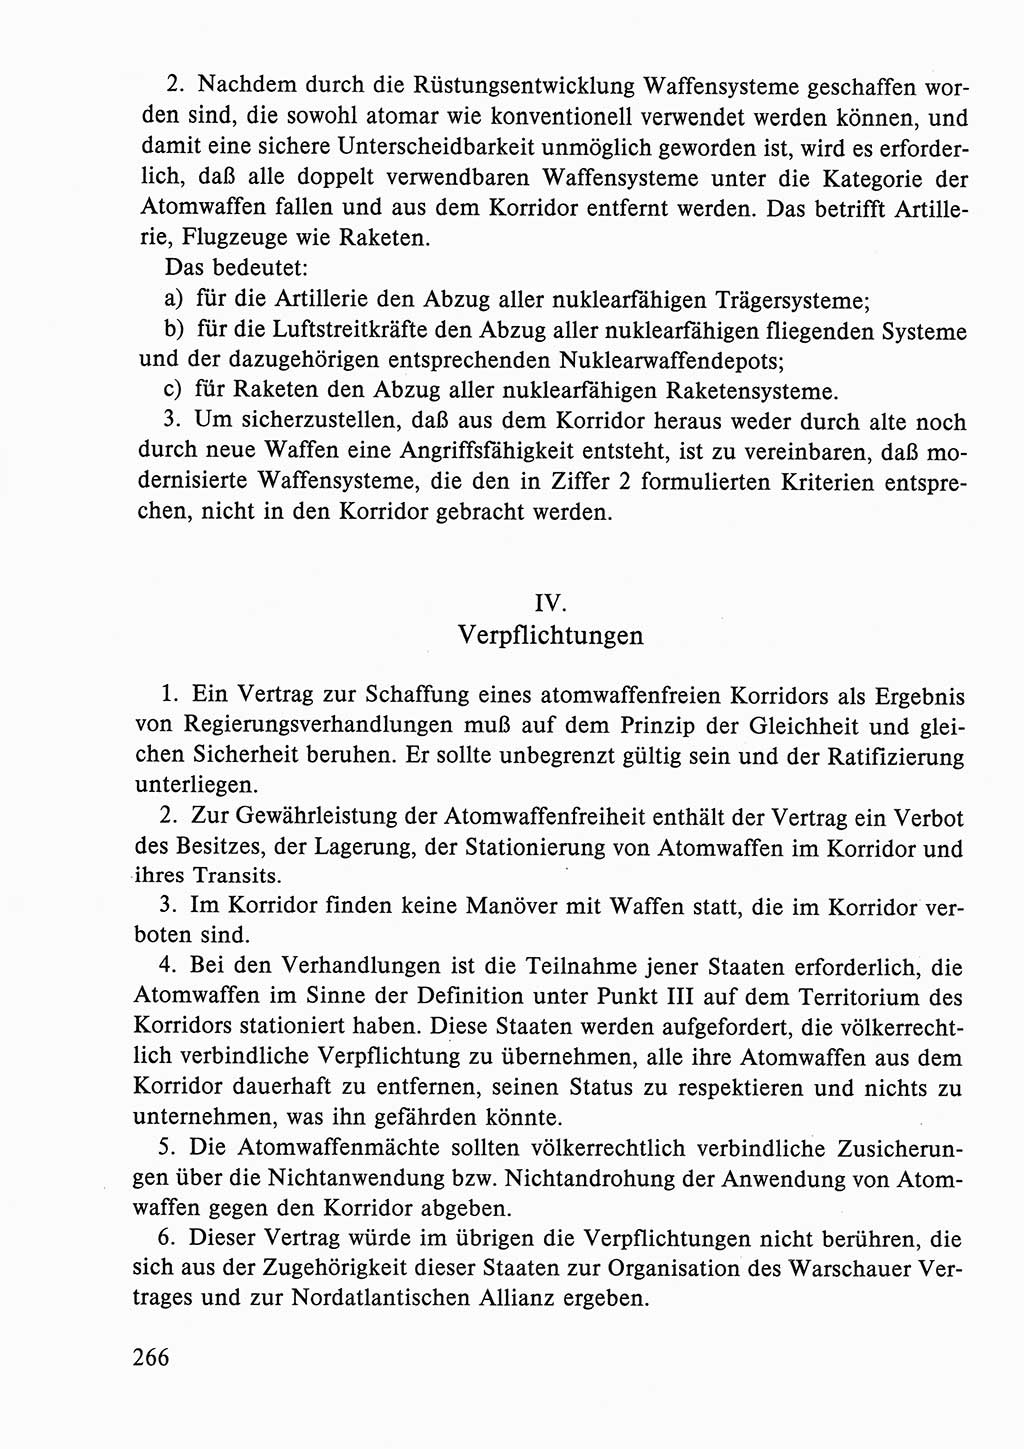 Dokumente der Sozialistischen Einheitspartei Deutschlands (SED) [Deutsche Demokratische Republik (DDR)] 1986-1987, Seite 266 (Dok. SED DDR 1986-1987, S. 266)